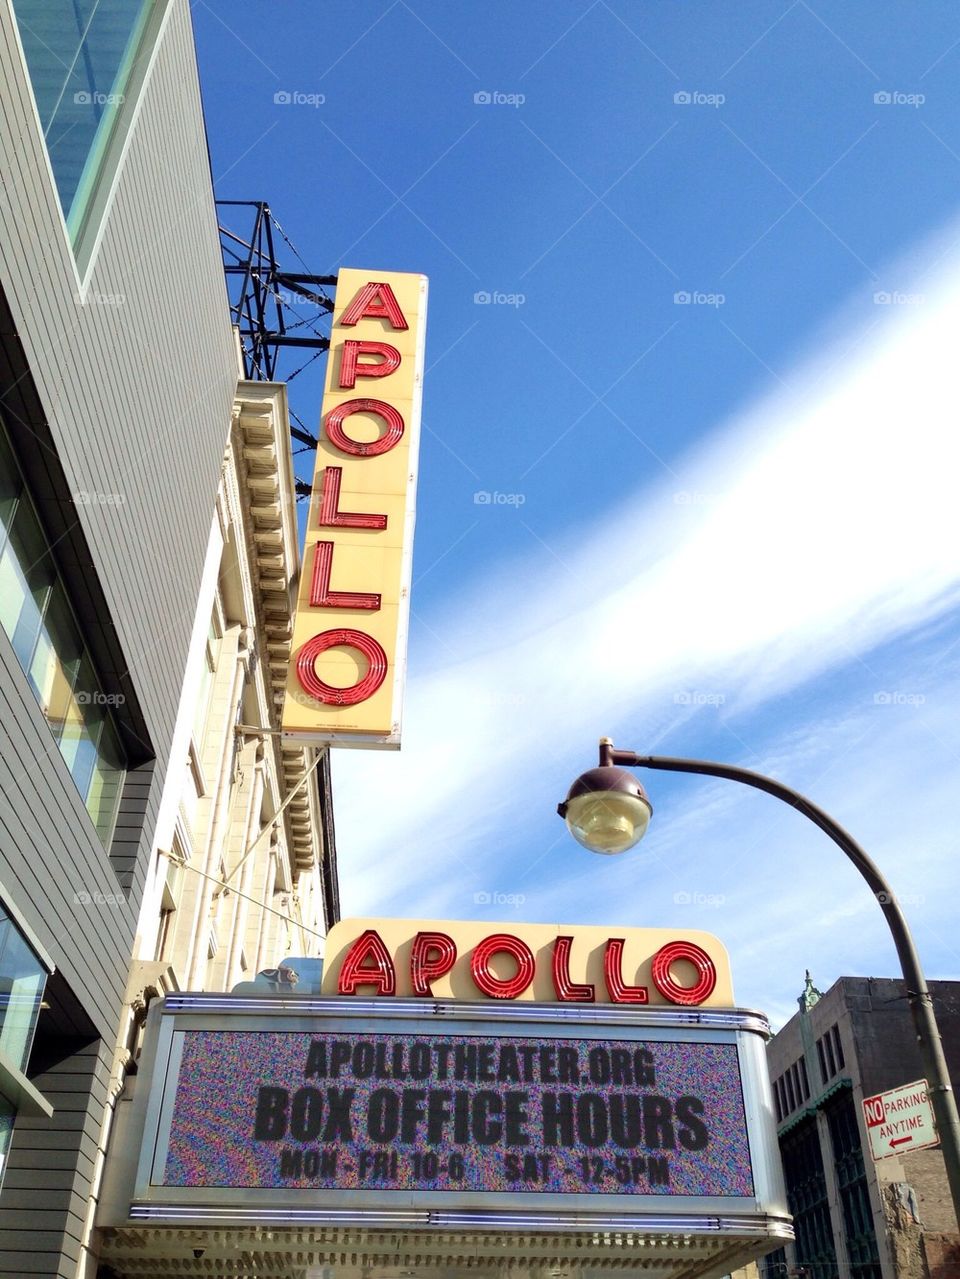 Apollo theater